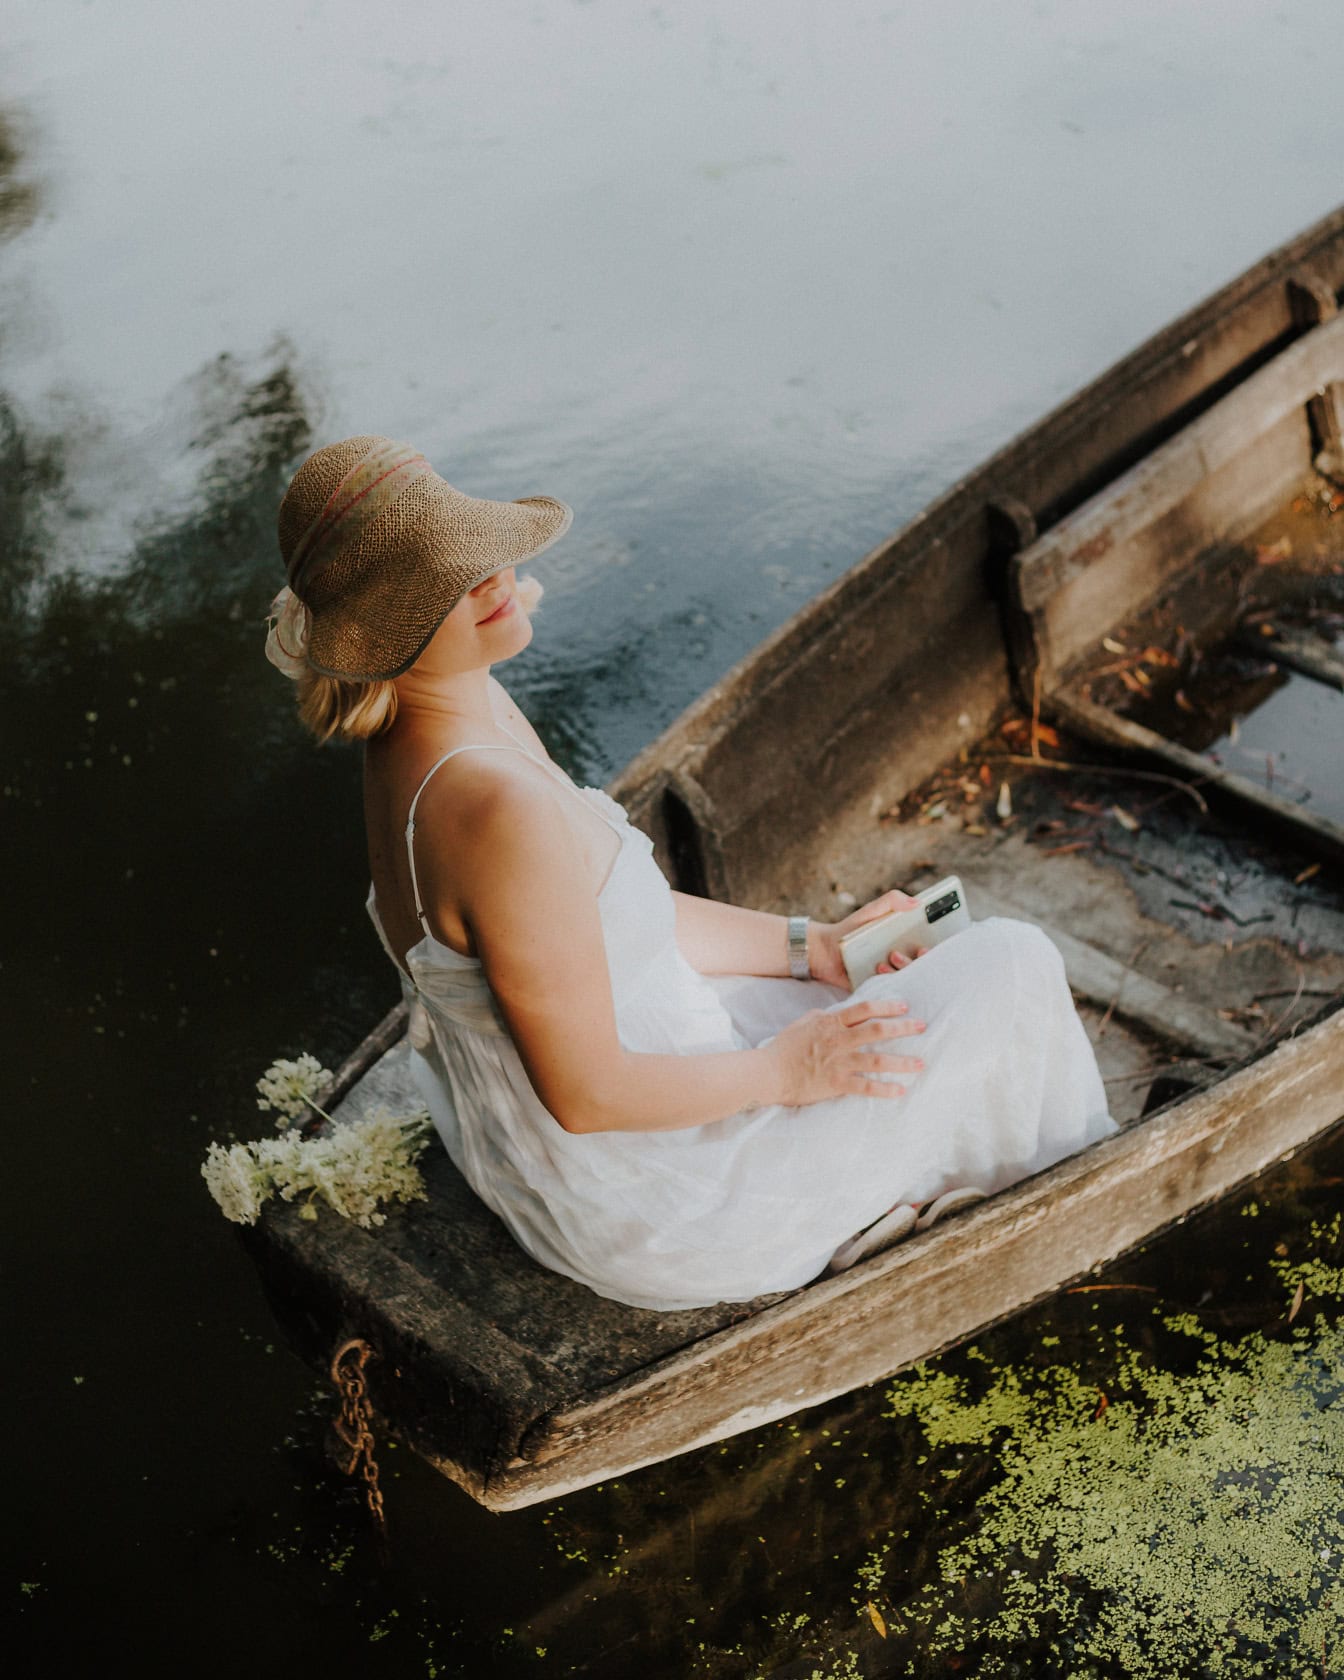 Kobieta w białej sukni i słomkowym kapeluszu siedzi w starej drewnianej łodzi